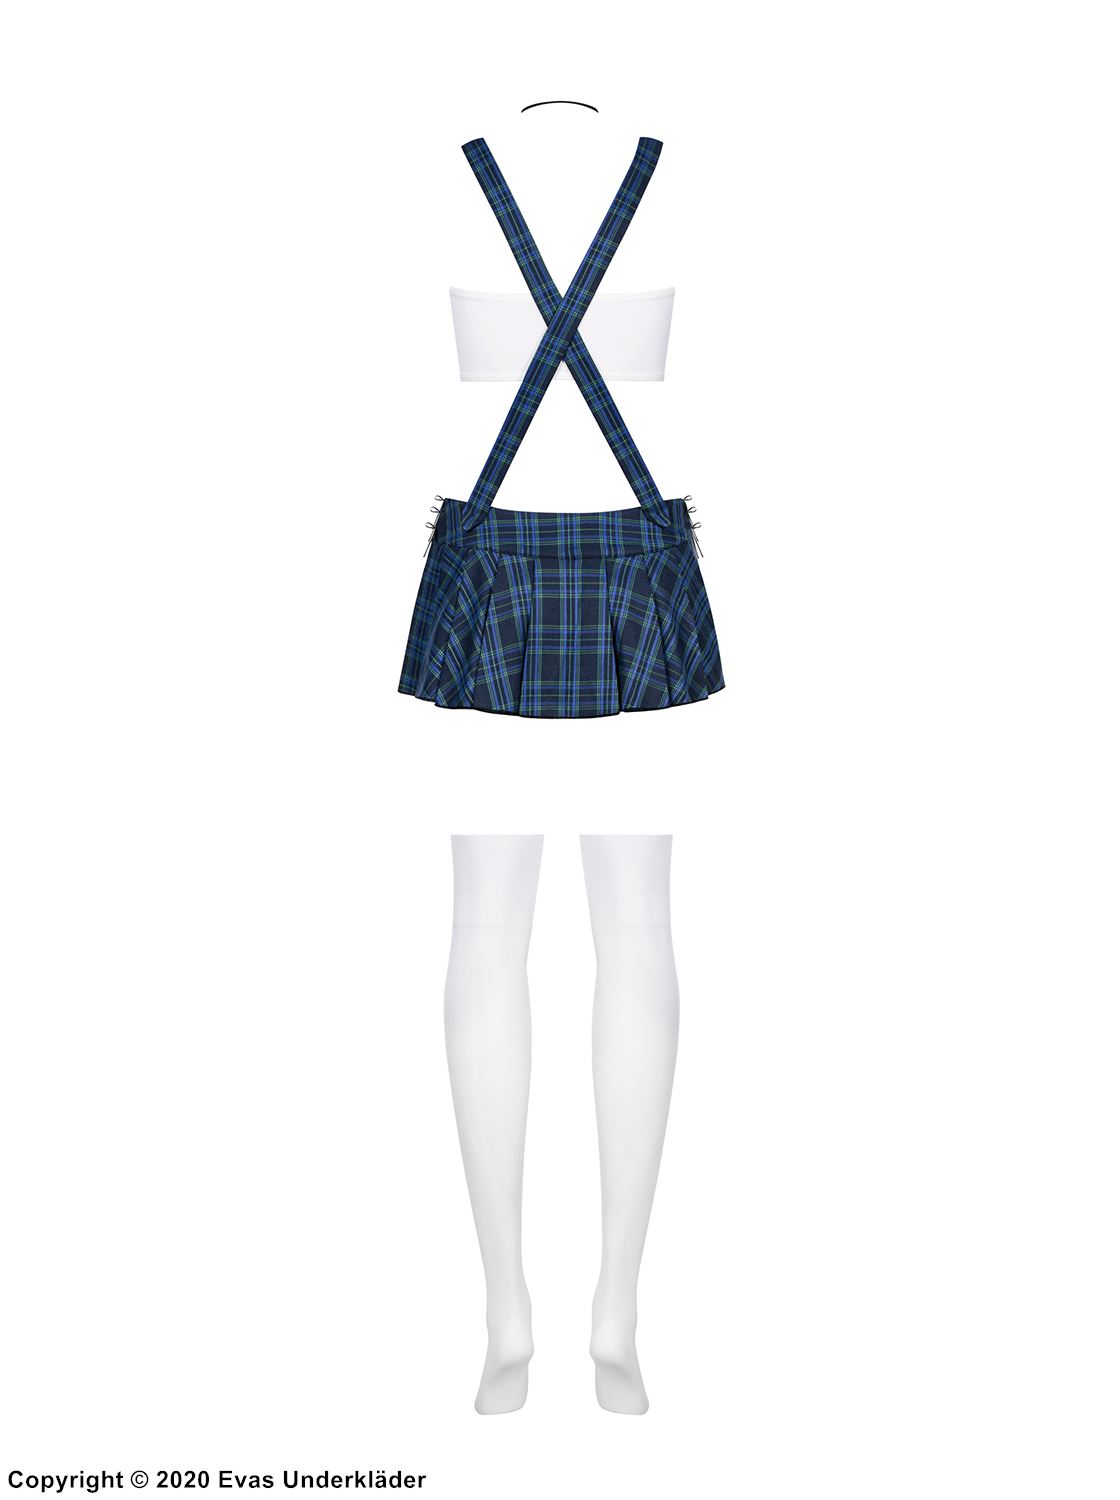 Schoolgirl, top and skirt costume, lacing, necktie, scott-checkered pattern